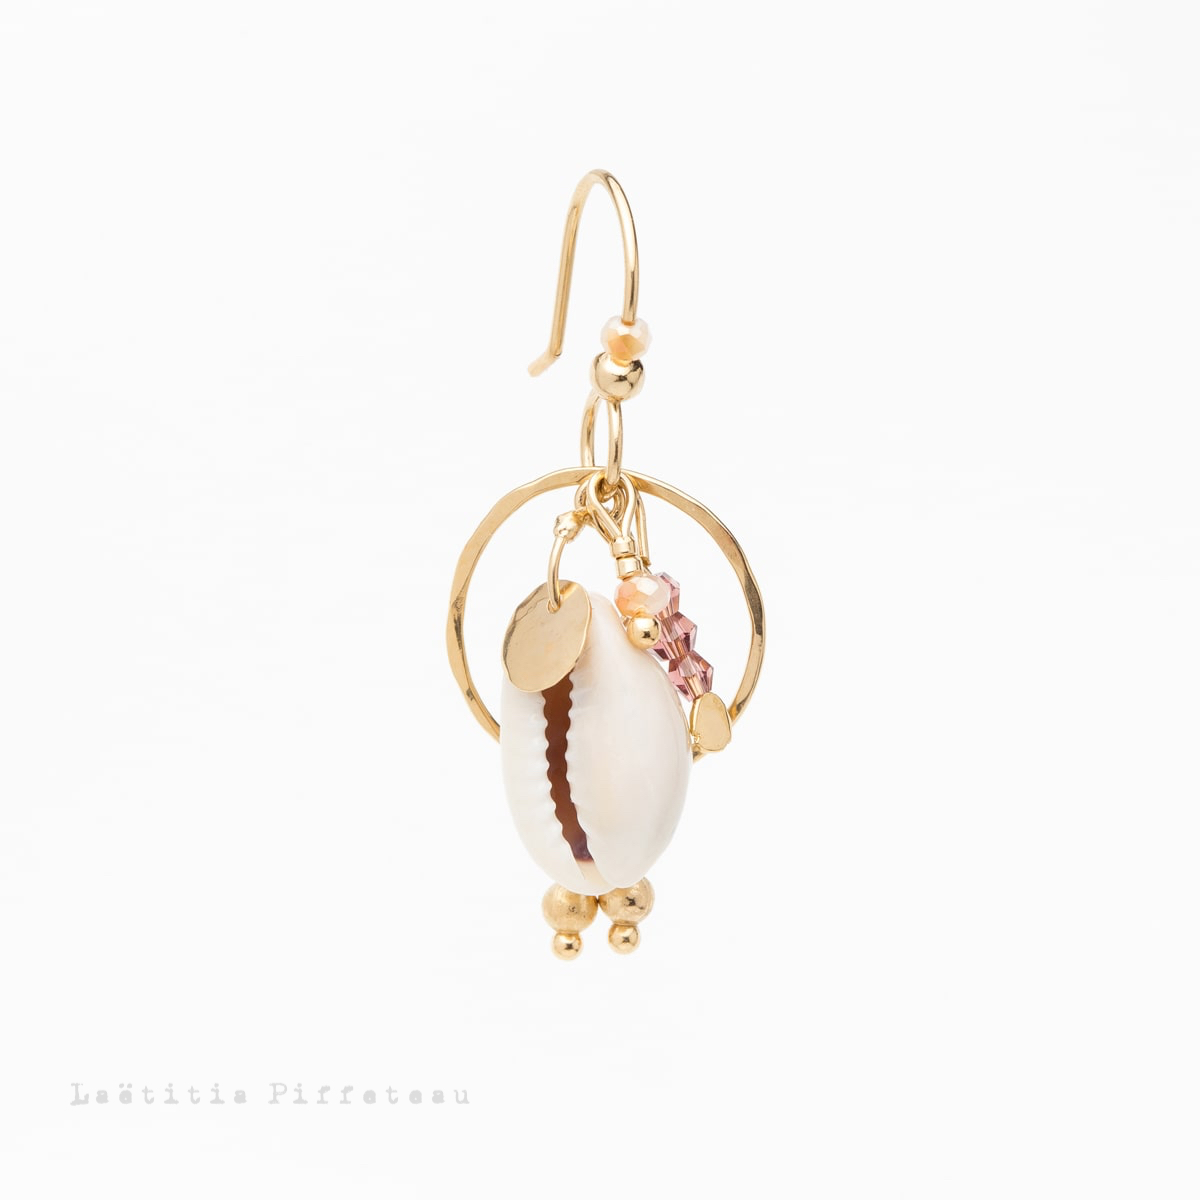 Boucle d'Oreille Cauri Coquillage et perles Swarovski Laëtitia Piffeteau